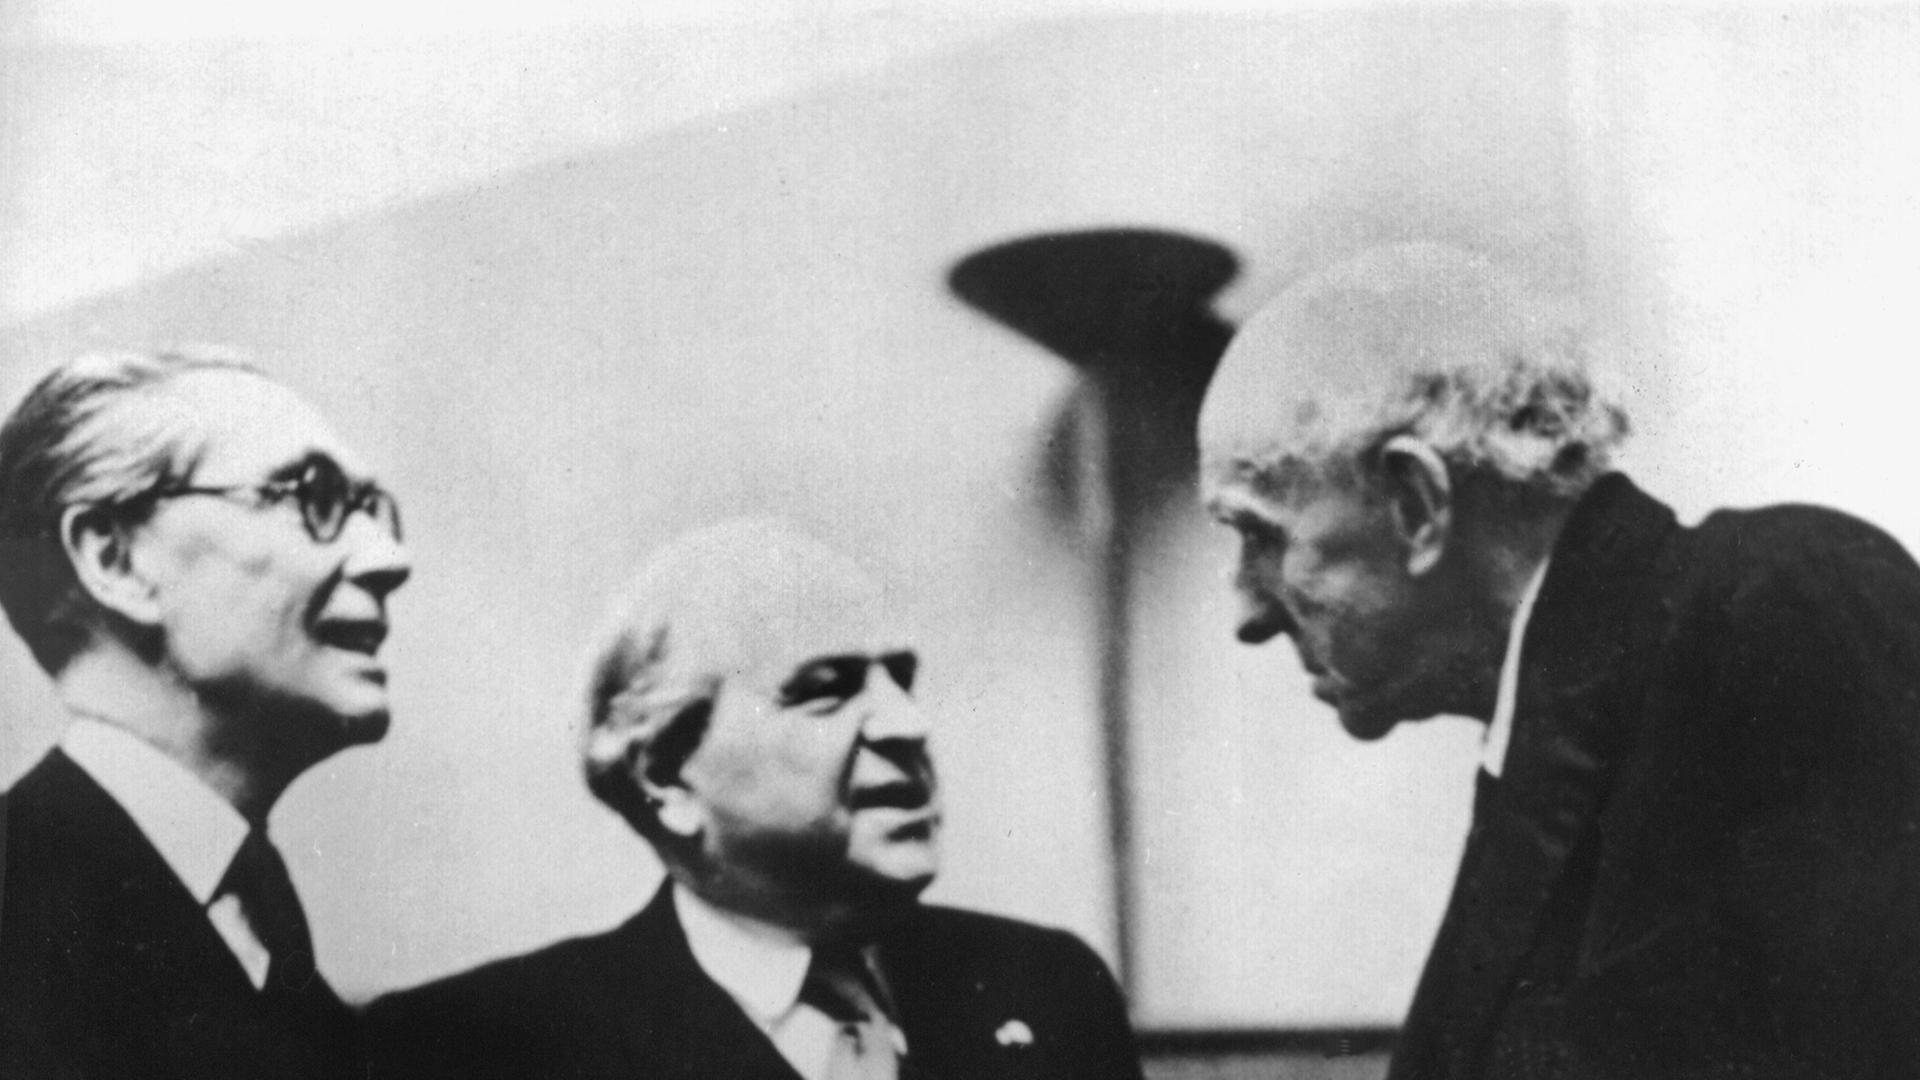 Der britische Staatsminister Philip John Noel-Baker (L.), der norwegische Politiker Carl Joachim Hambro (M.) und Lord Edgar Algernon Robert Cecil (R.) während der letzten Sitzungsperiode des Völkerbundes am 12.4.1946 in Genf.